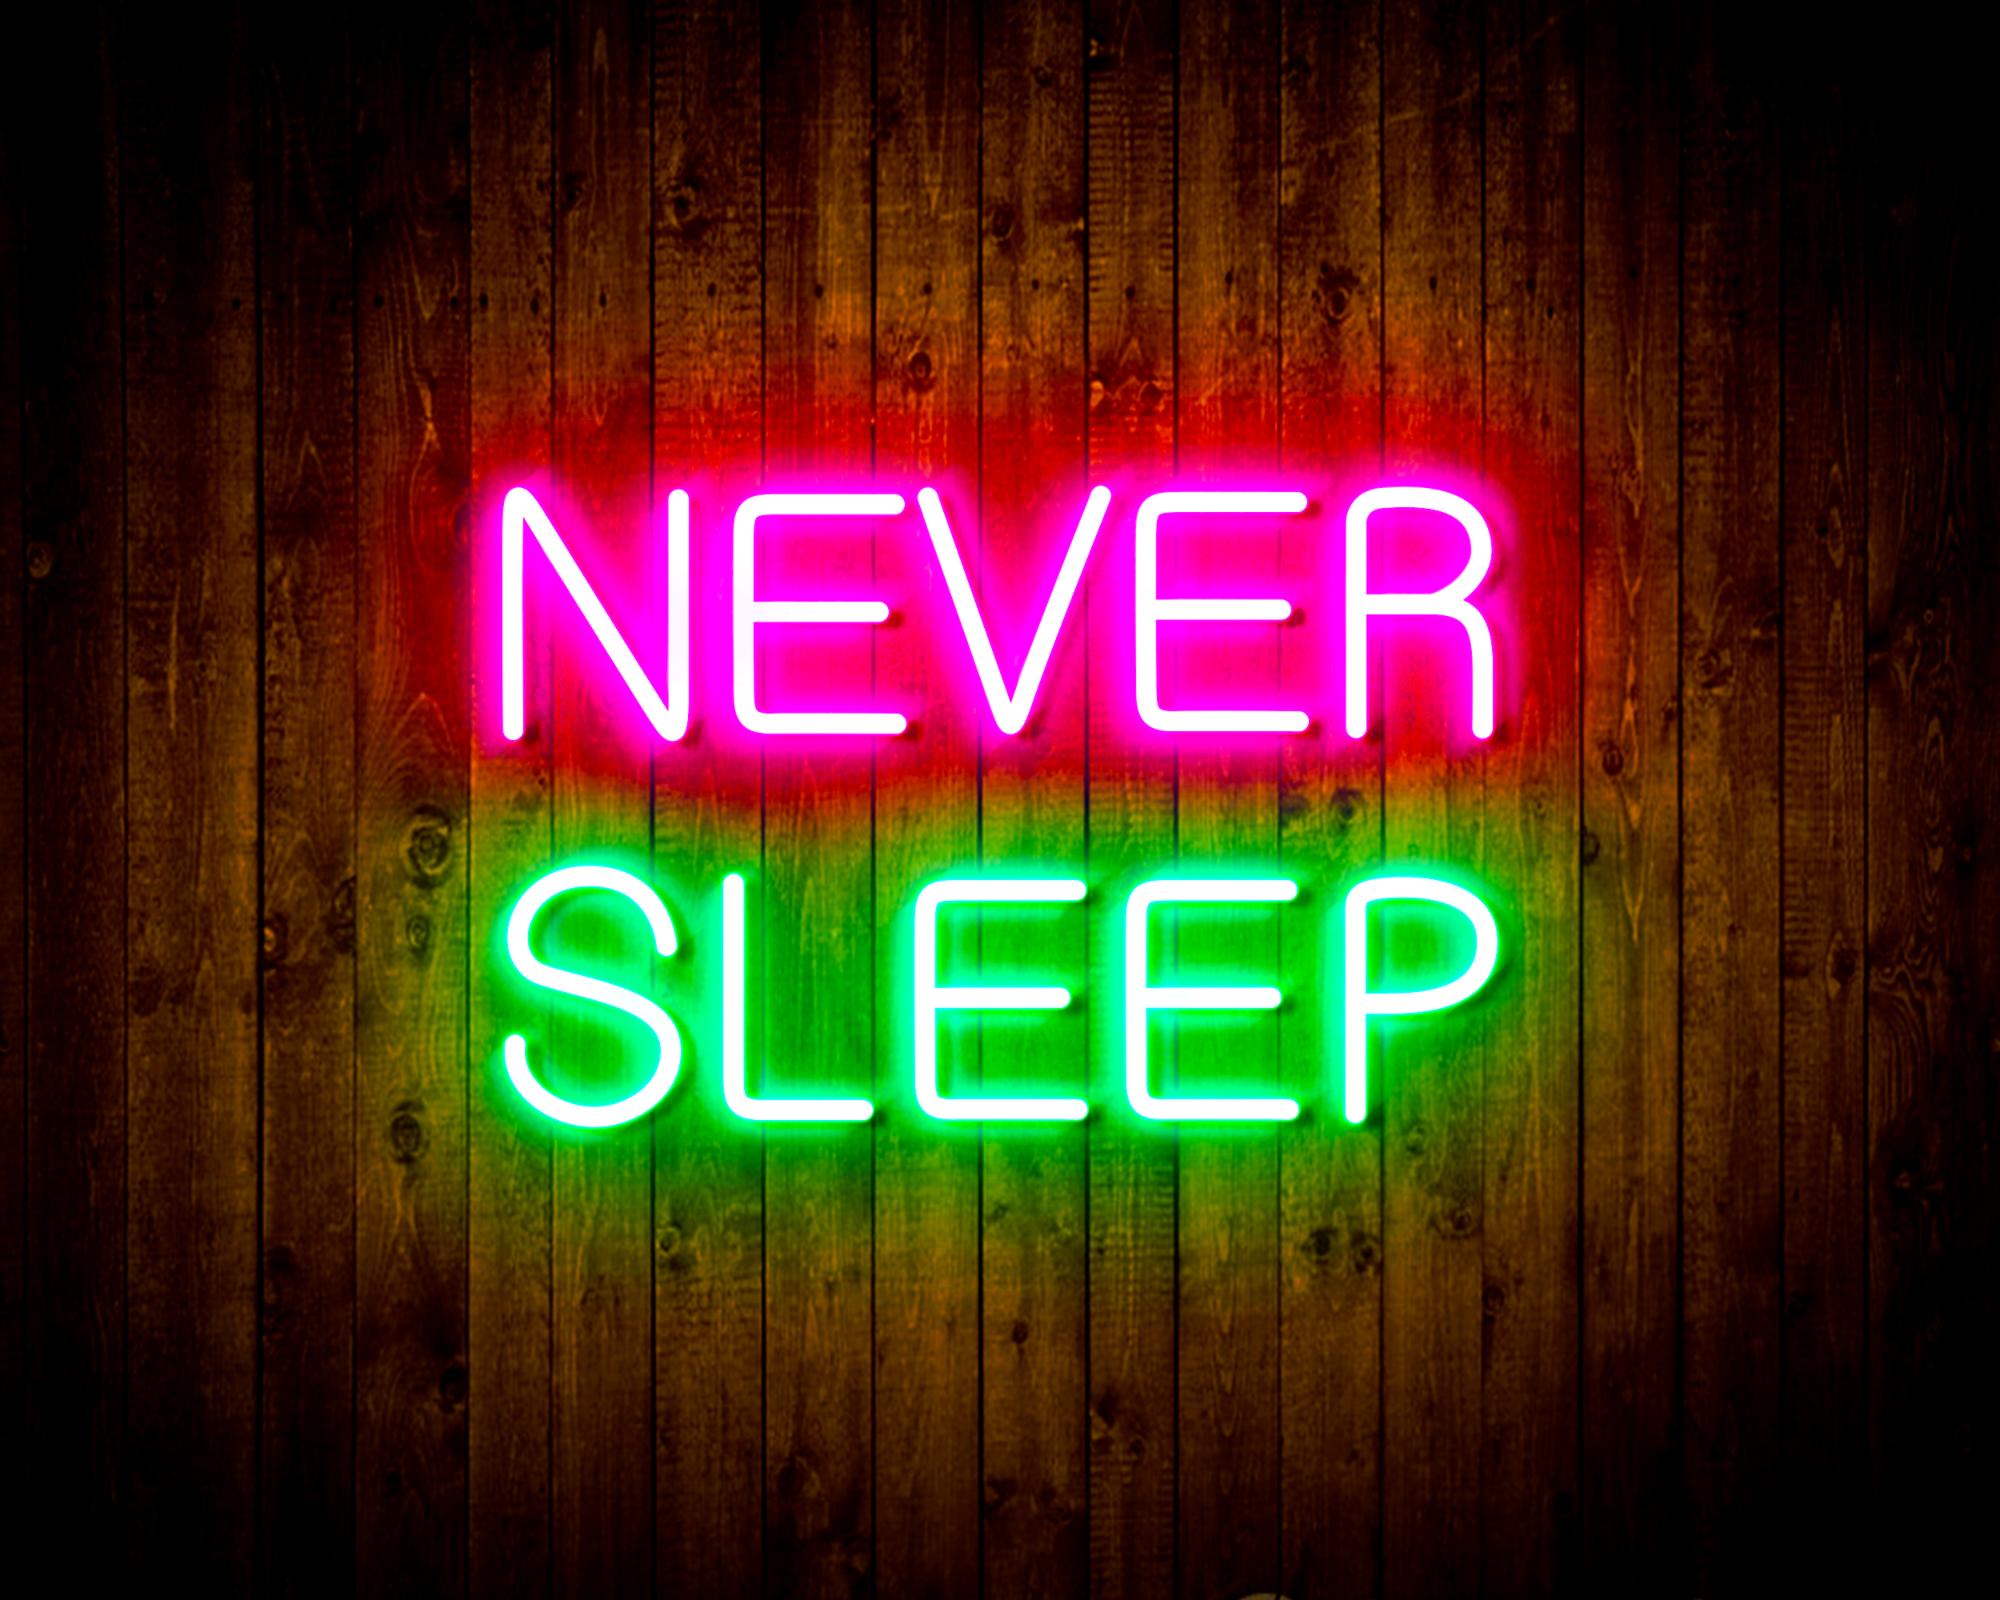 "NEVER SLEEP" LED Neon Sign Wall Light